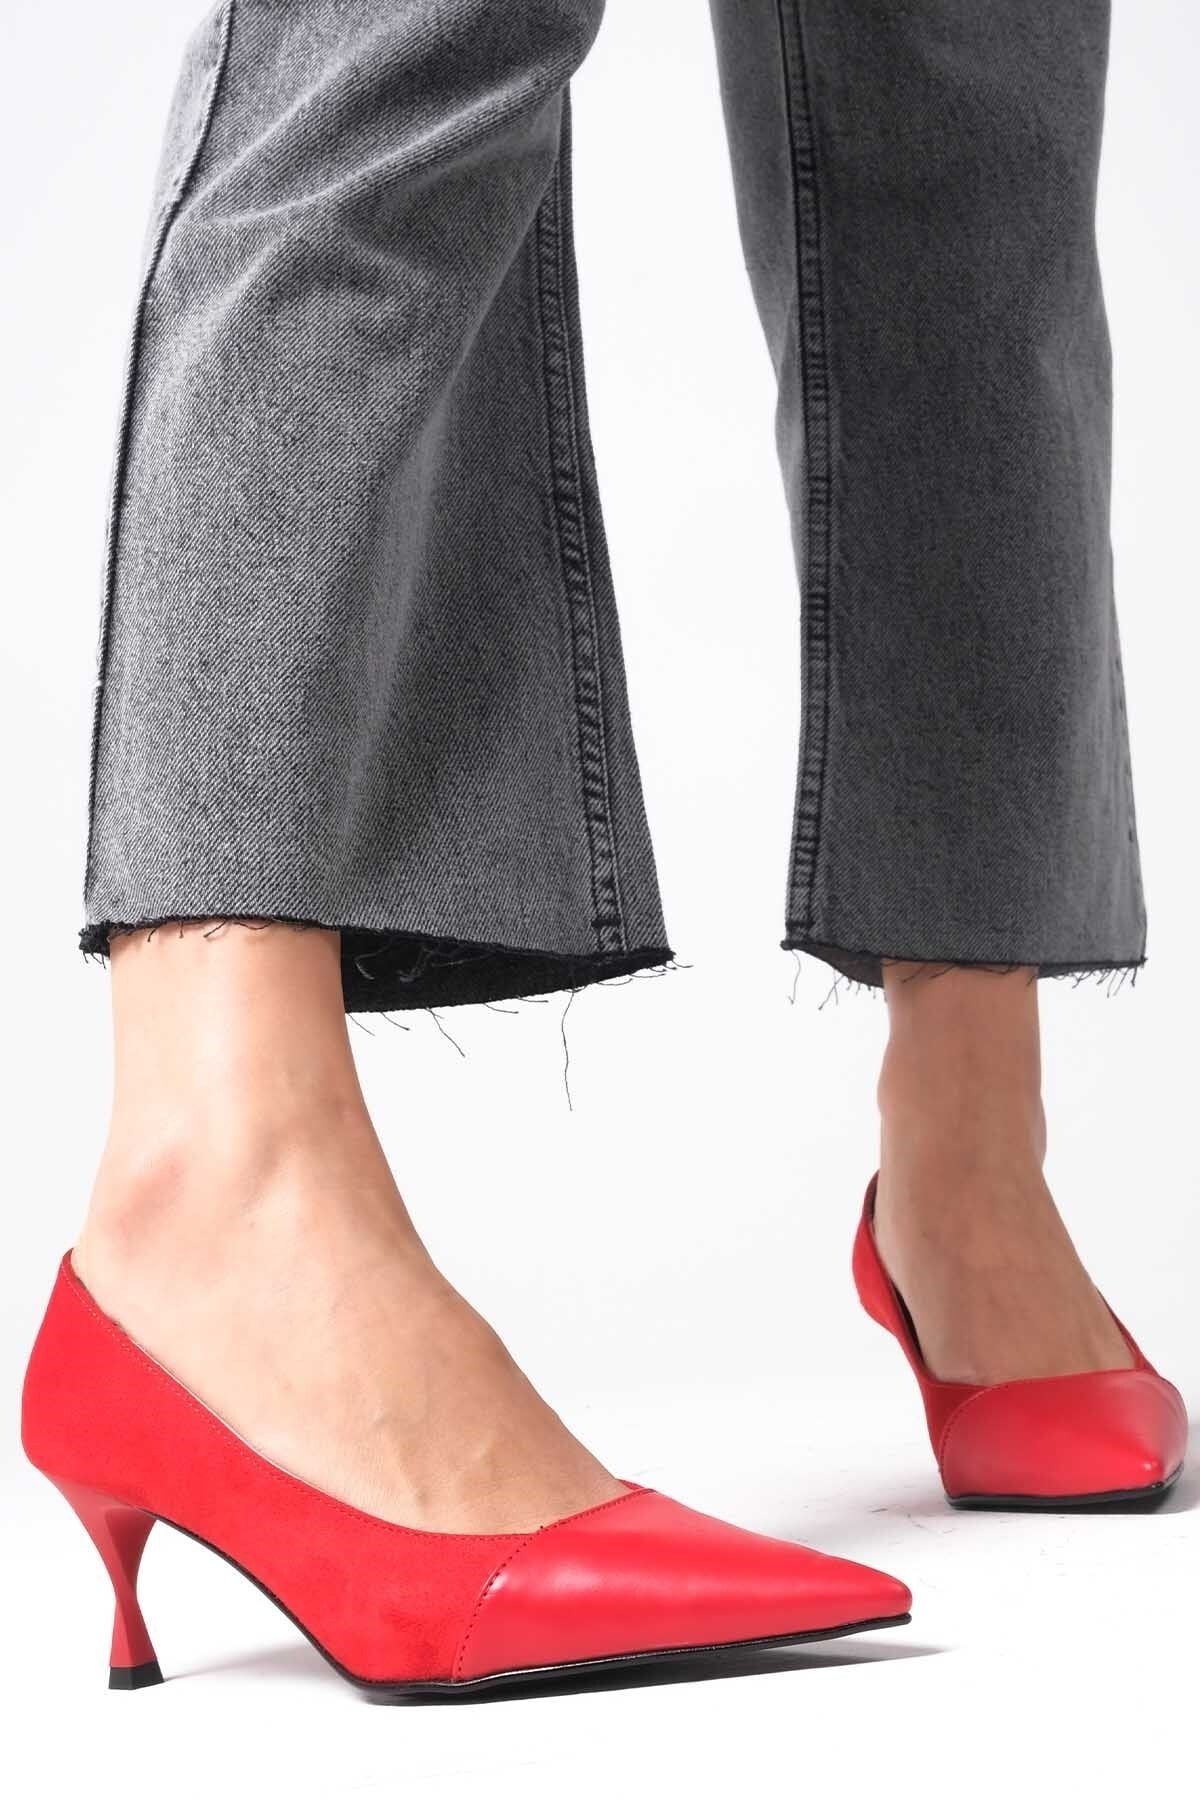 Mio Gusto Lina Kırmızı Renk Süet Ve Deri Kombinasyonlu Topuklu Kadın Ayakkabı